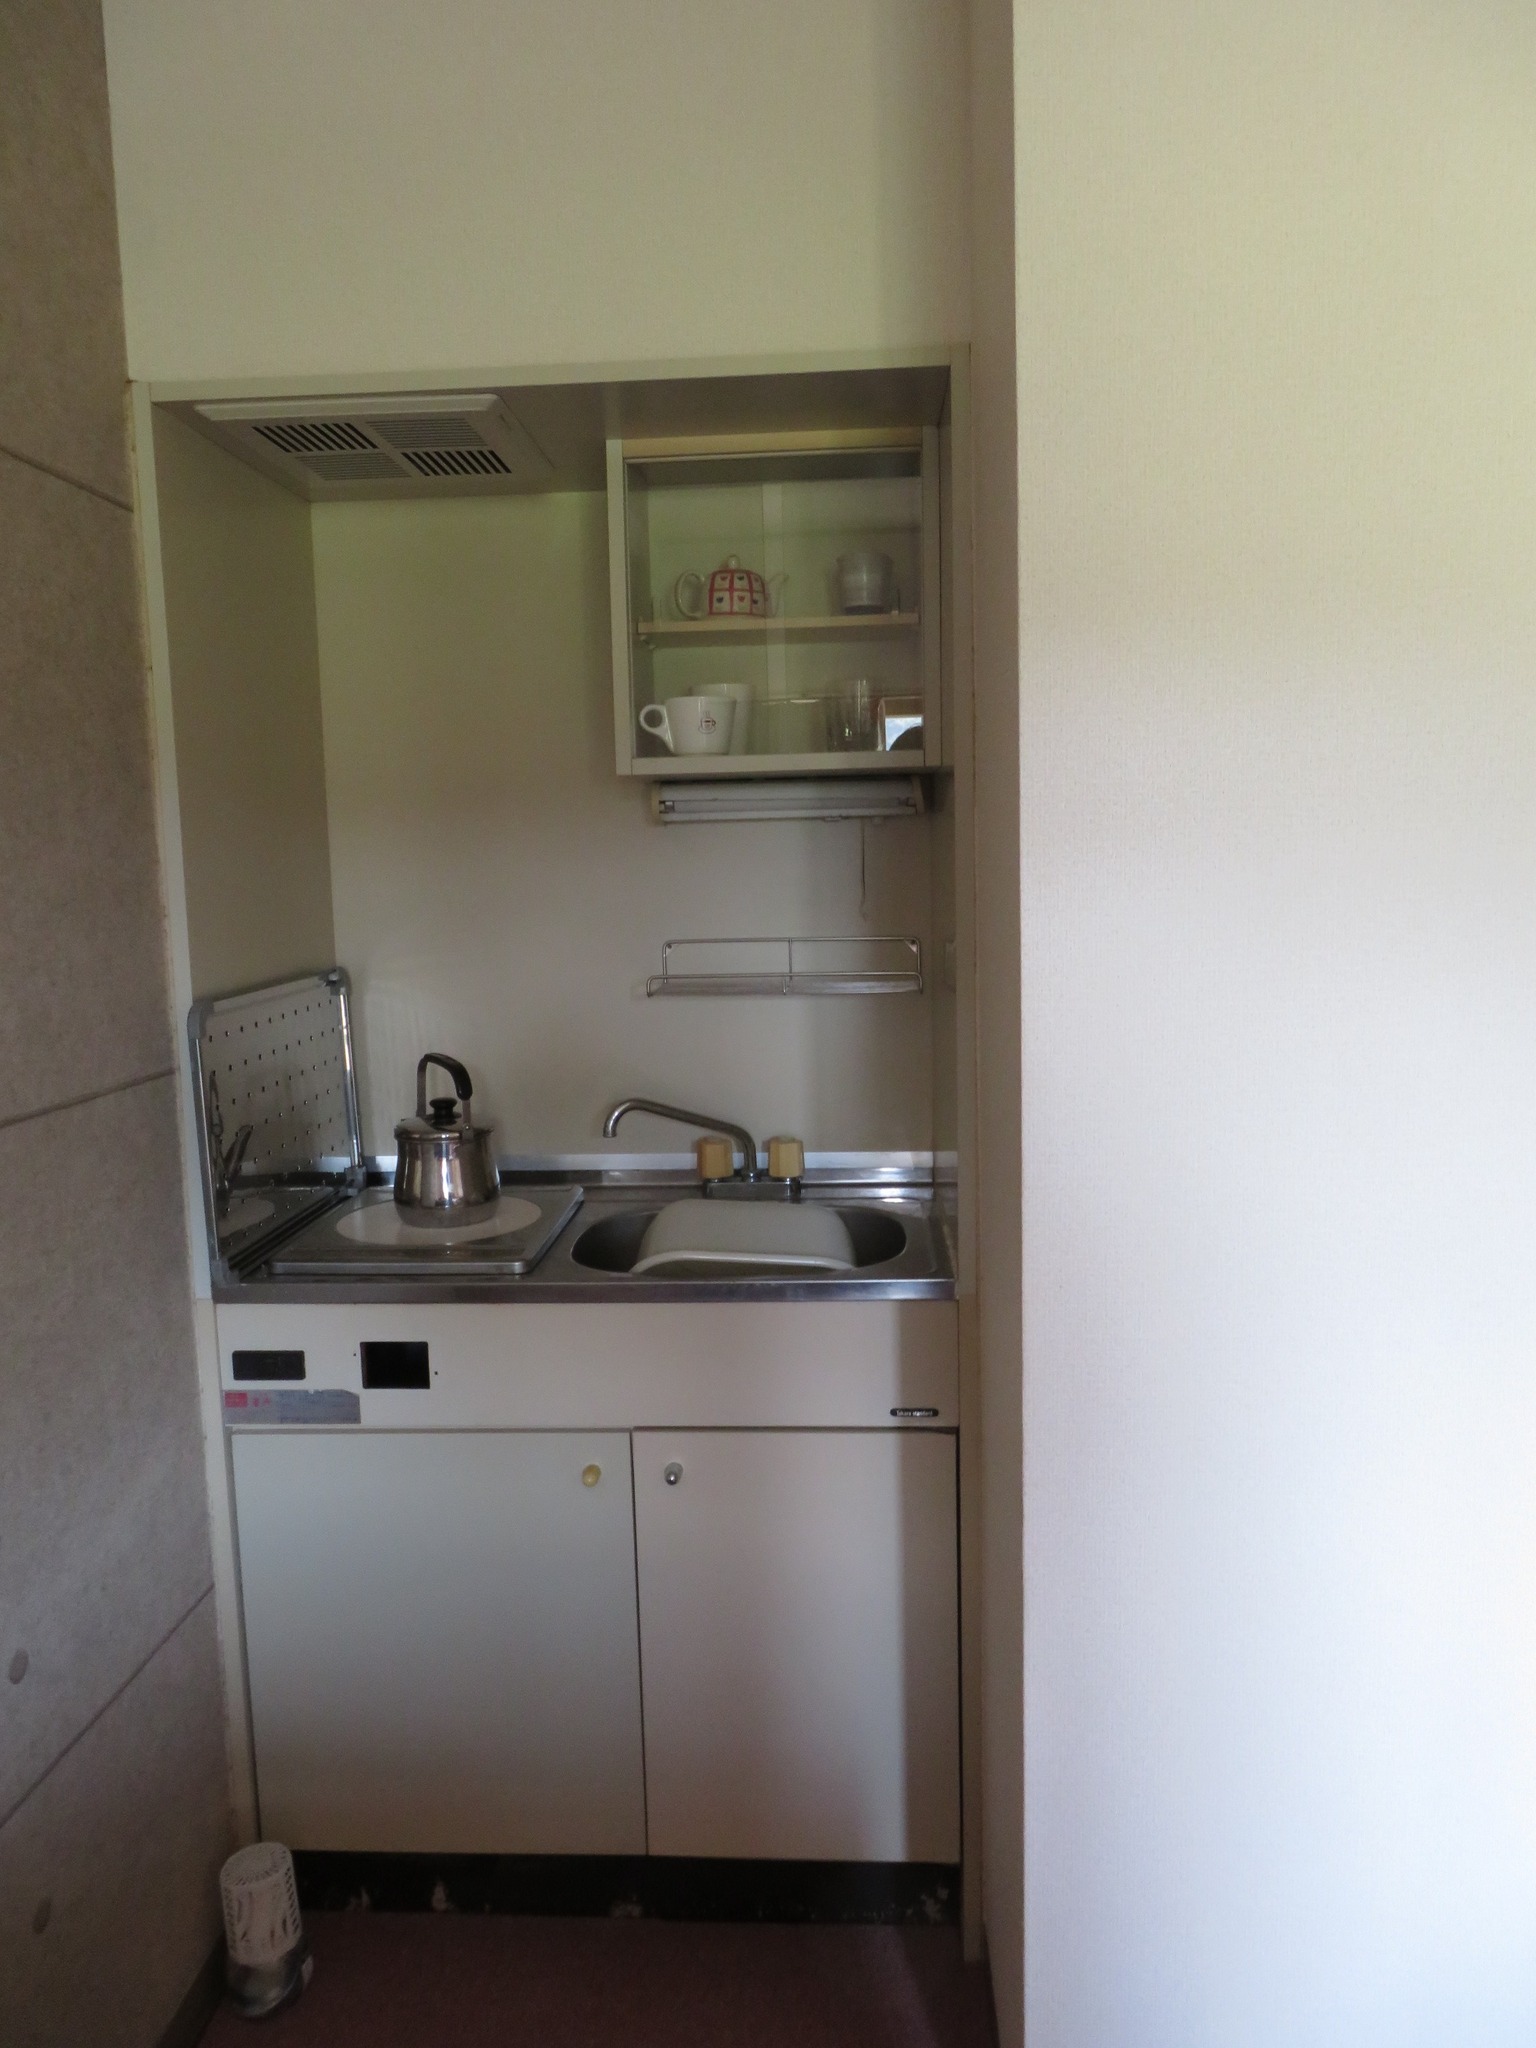 1戸貸切 ツインルーム キッチン 洗濯機 駐車場無料